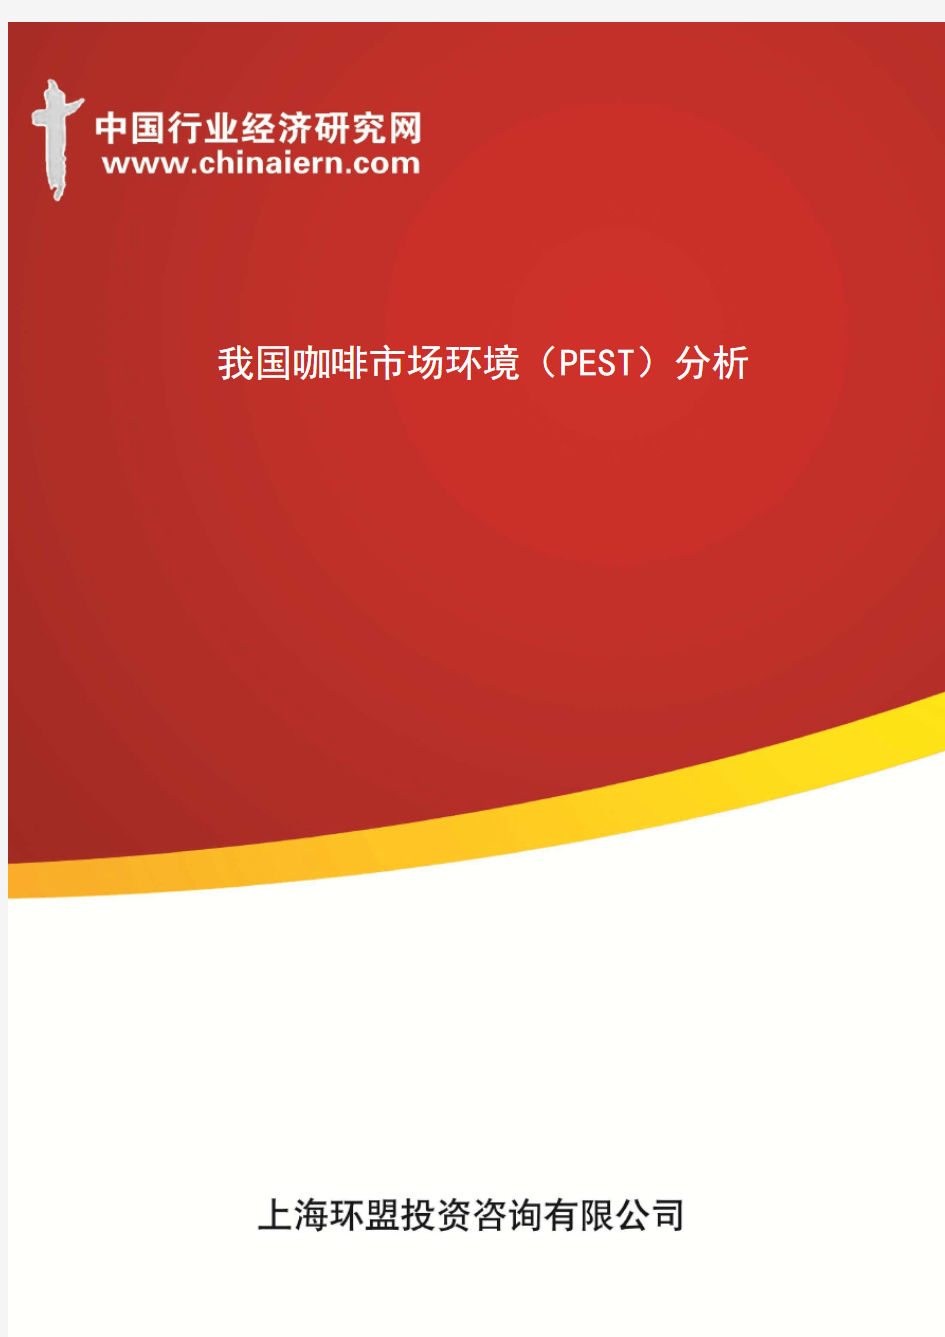 我国咖啡市场环境(PEST)分析(上海环盟)